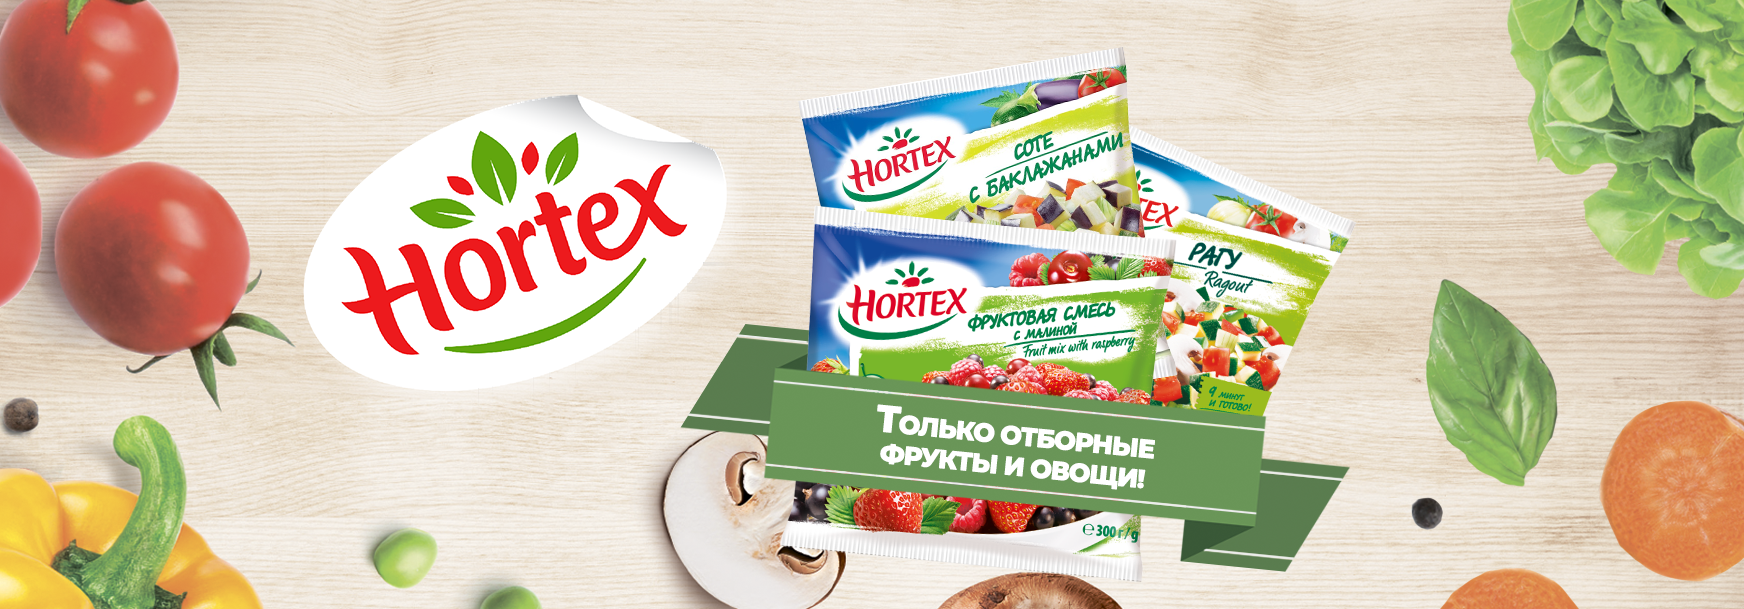 Hortex только отборные фрукты и овощи